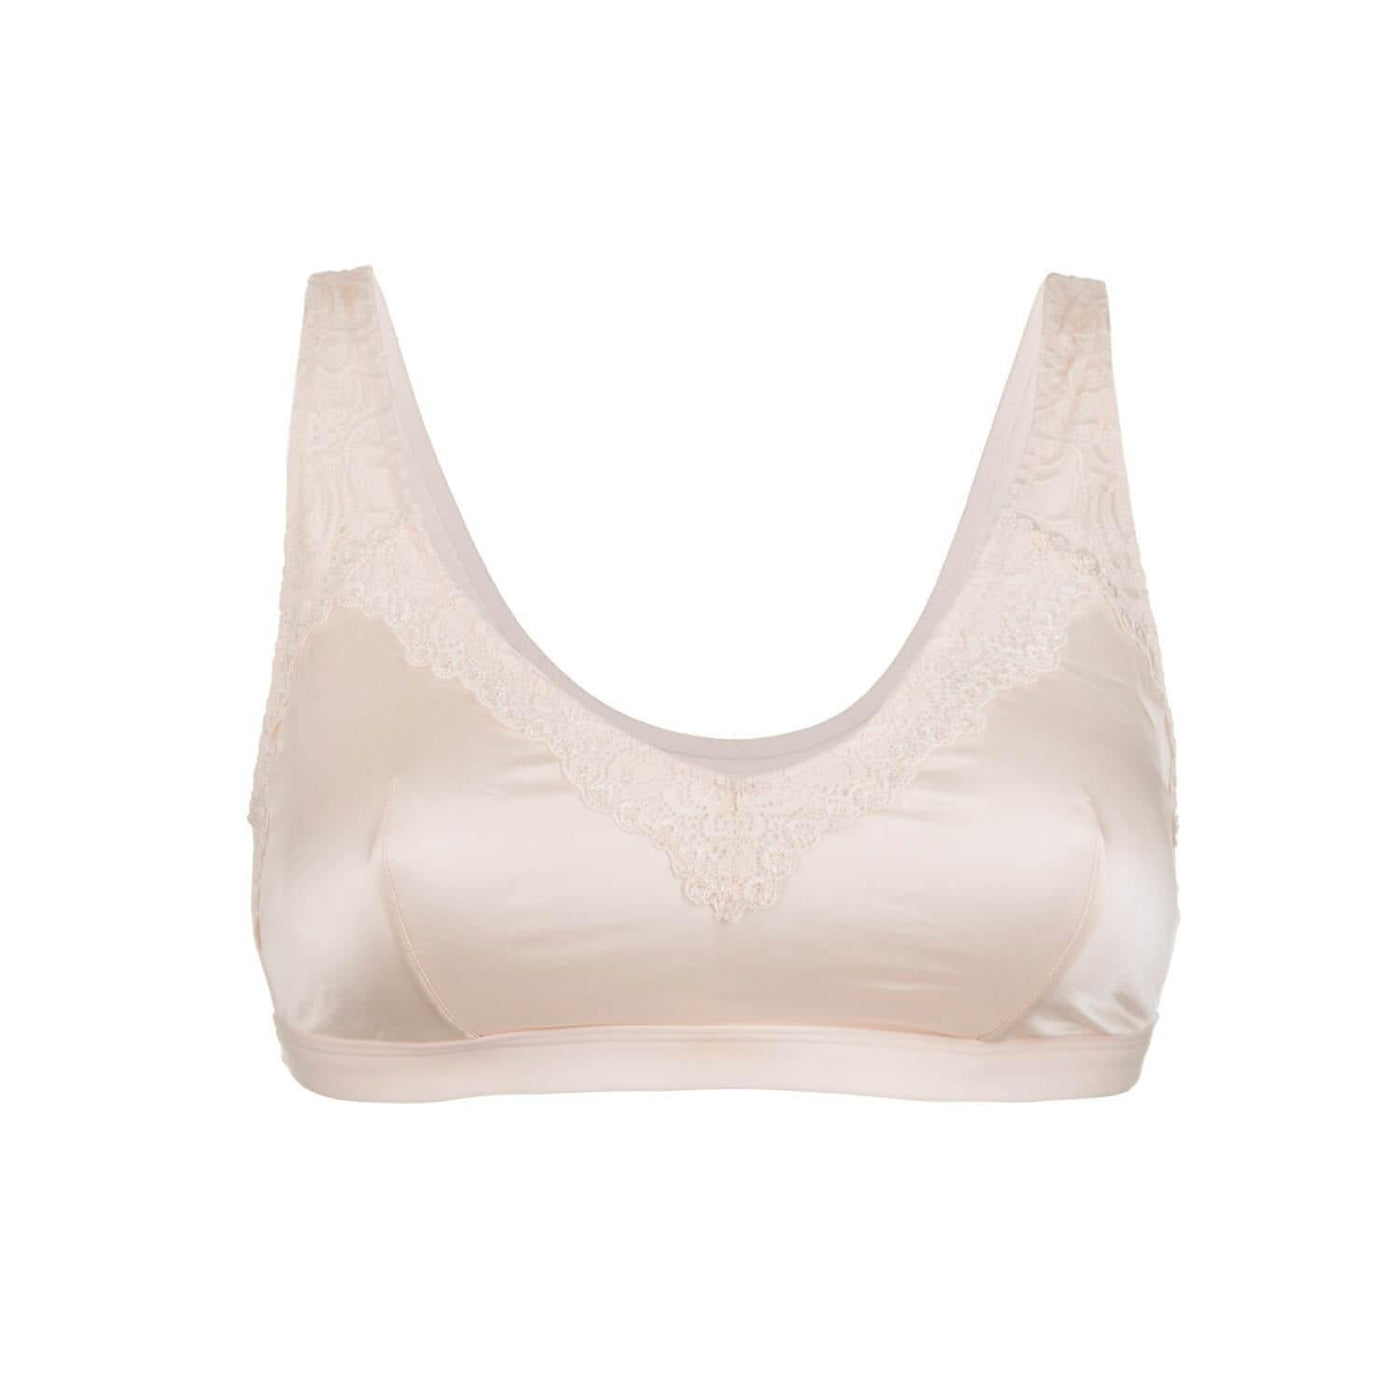 Buy Hanes Cotton Comfort White Maternity Bra G709 001 - Bra for